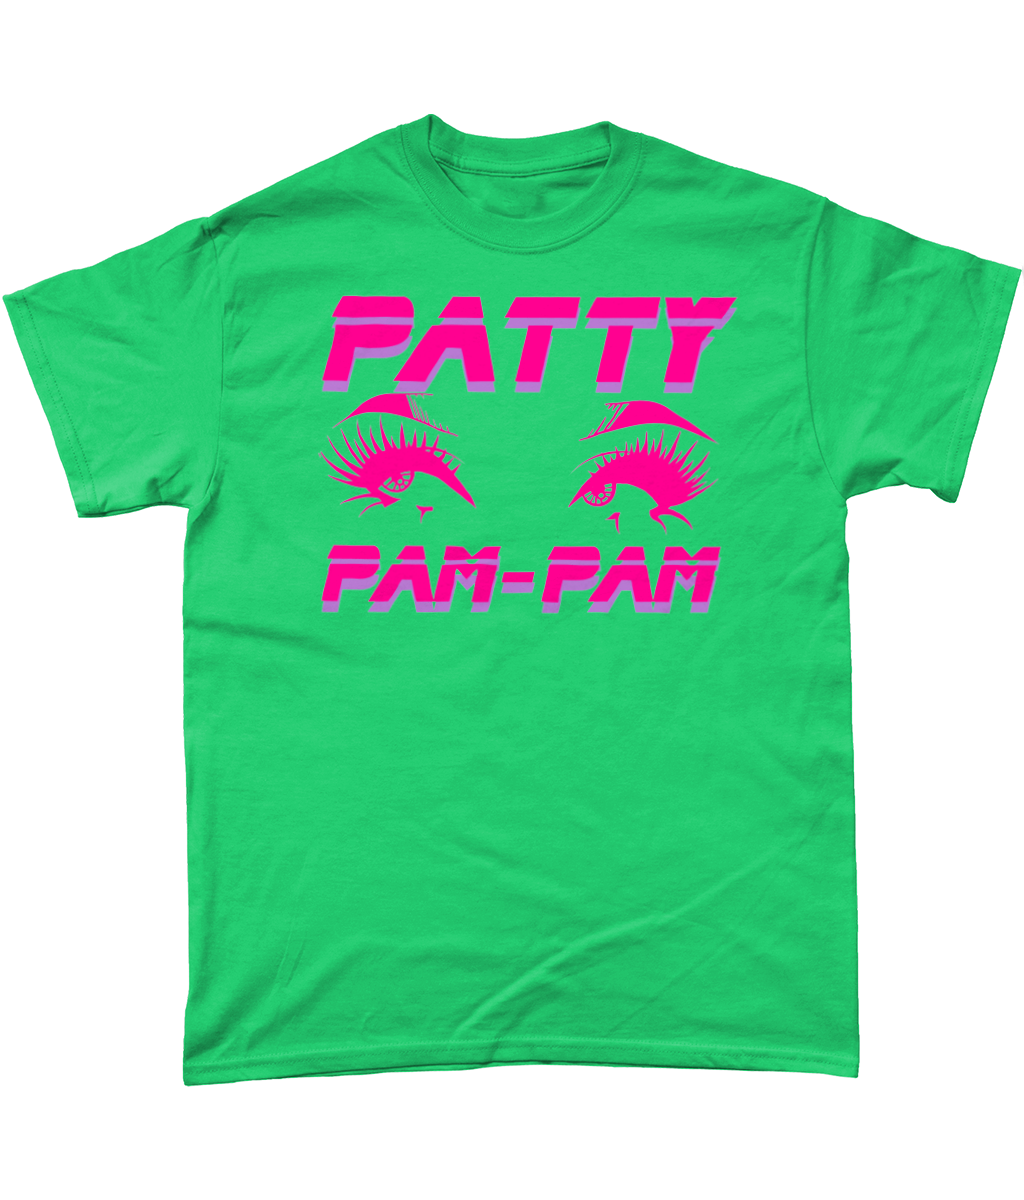 Patty Pam-Pam - Eyes T-Shirt